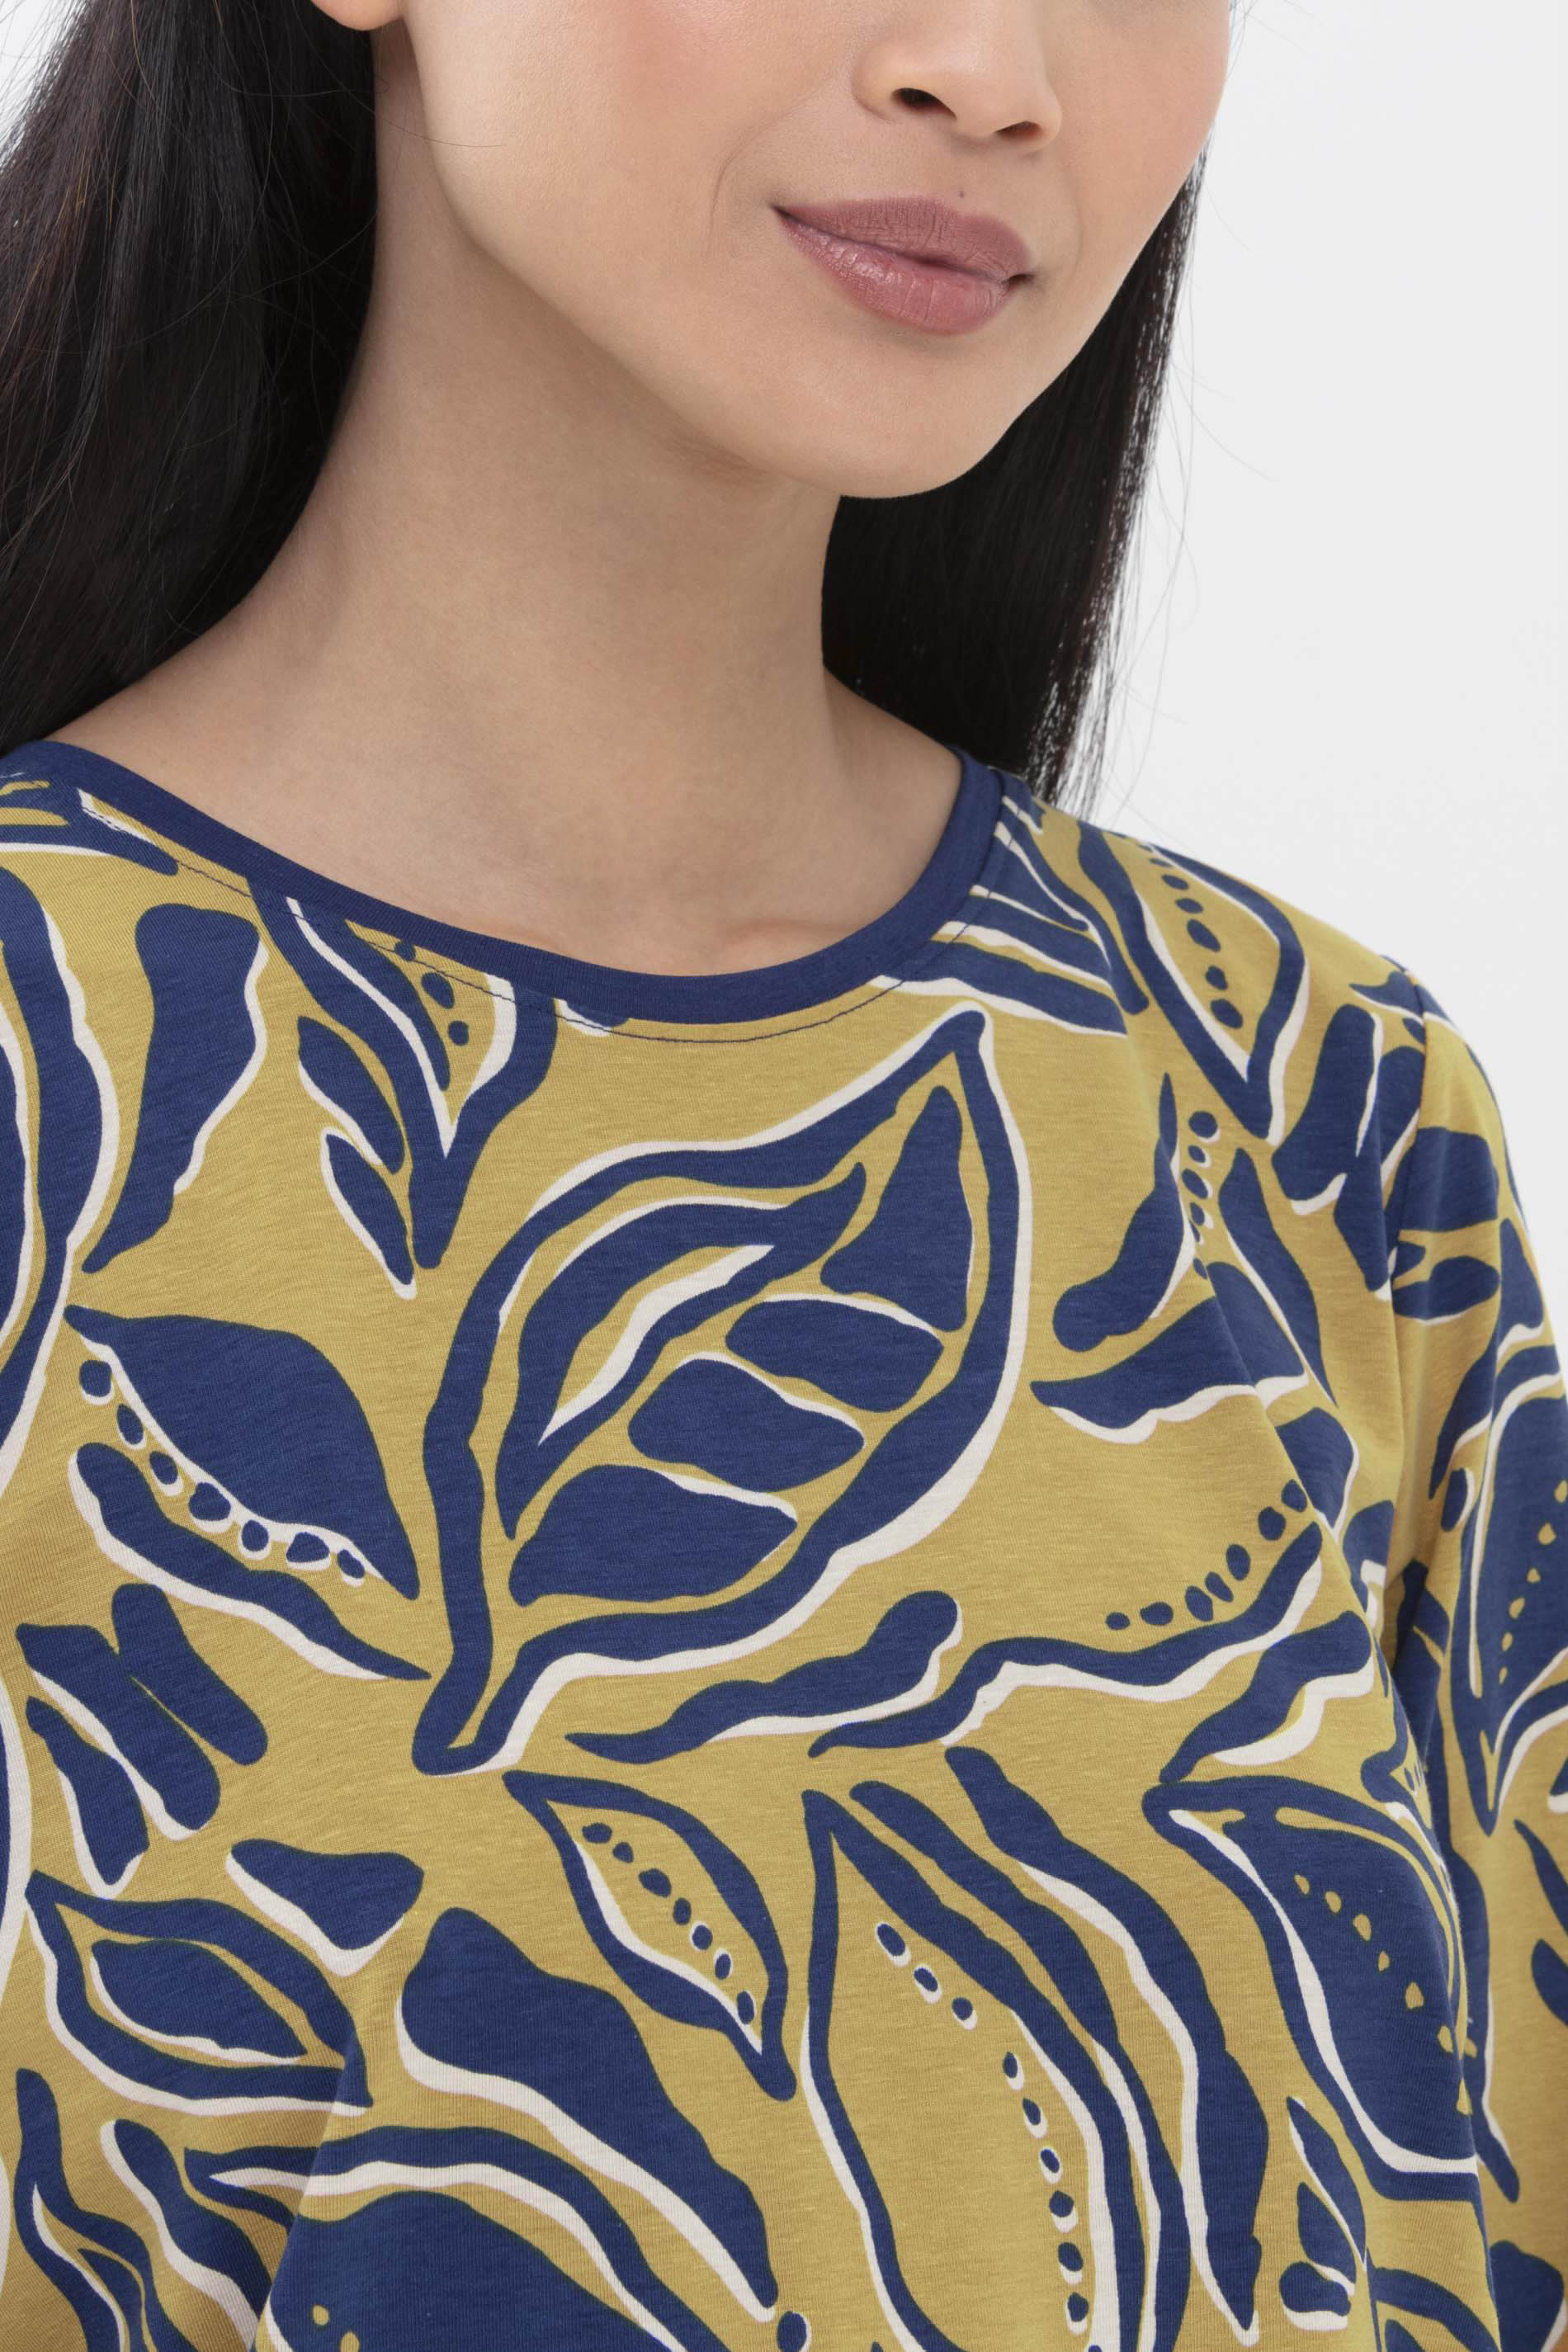 Long-sleeved shirt Wintergold Serie Jola Detail View 01 | mey®